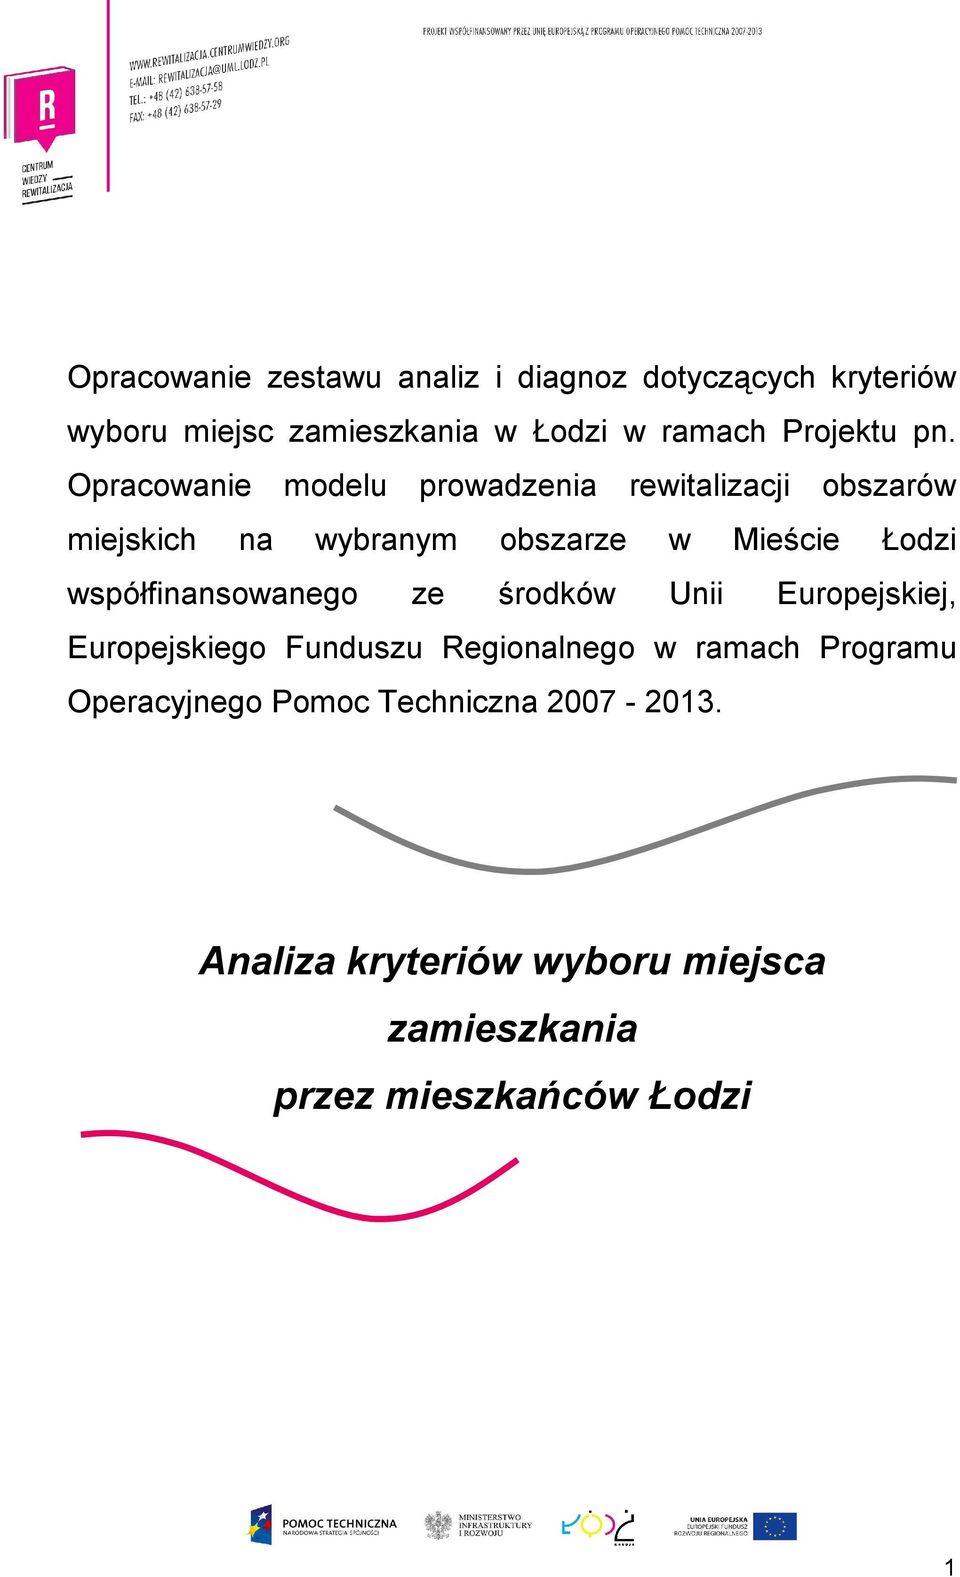 Opracowanie modelu prowadzenia rewitalizacji obszarów miejskich na wybranym obszarze w Mieście Łodzi